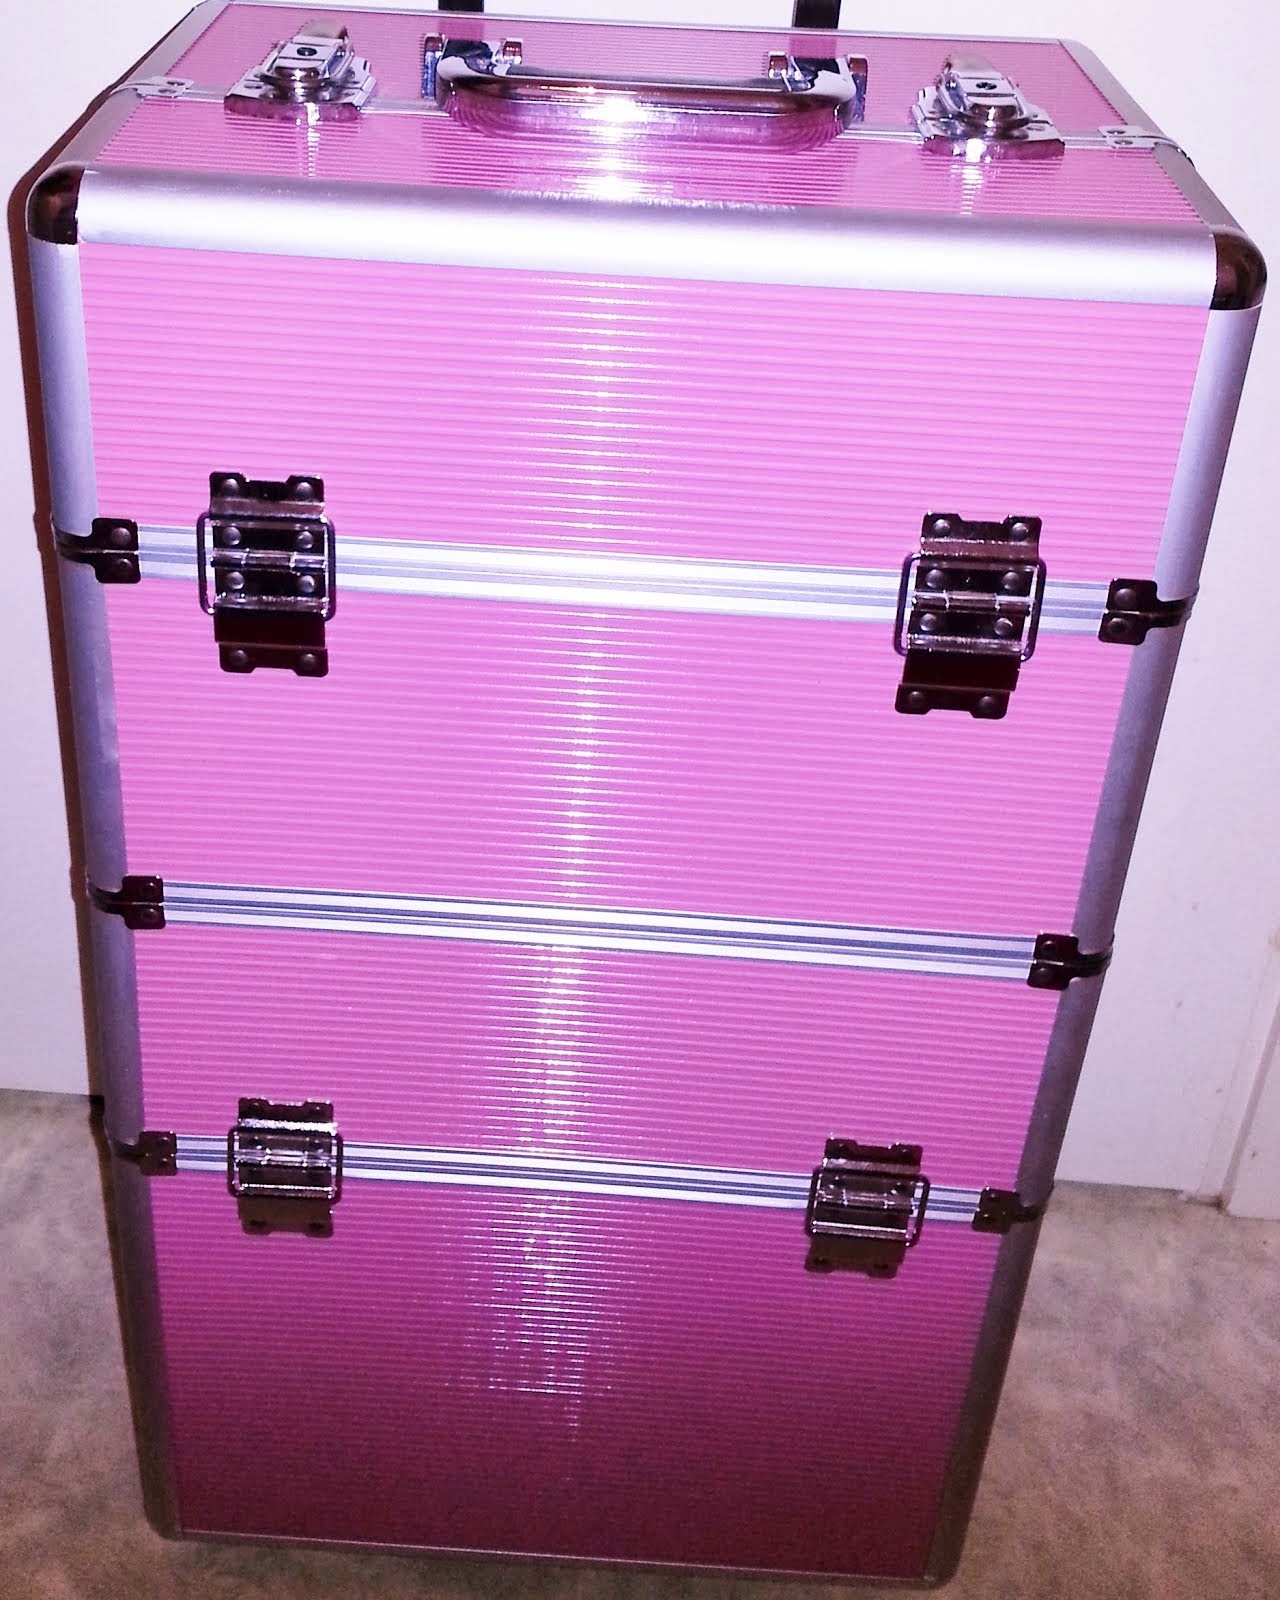 Pink Beauty Box